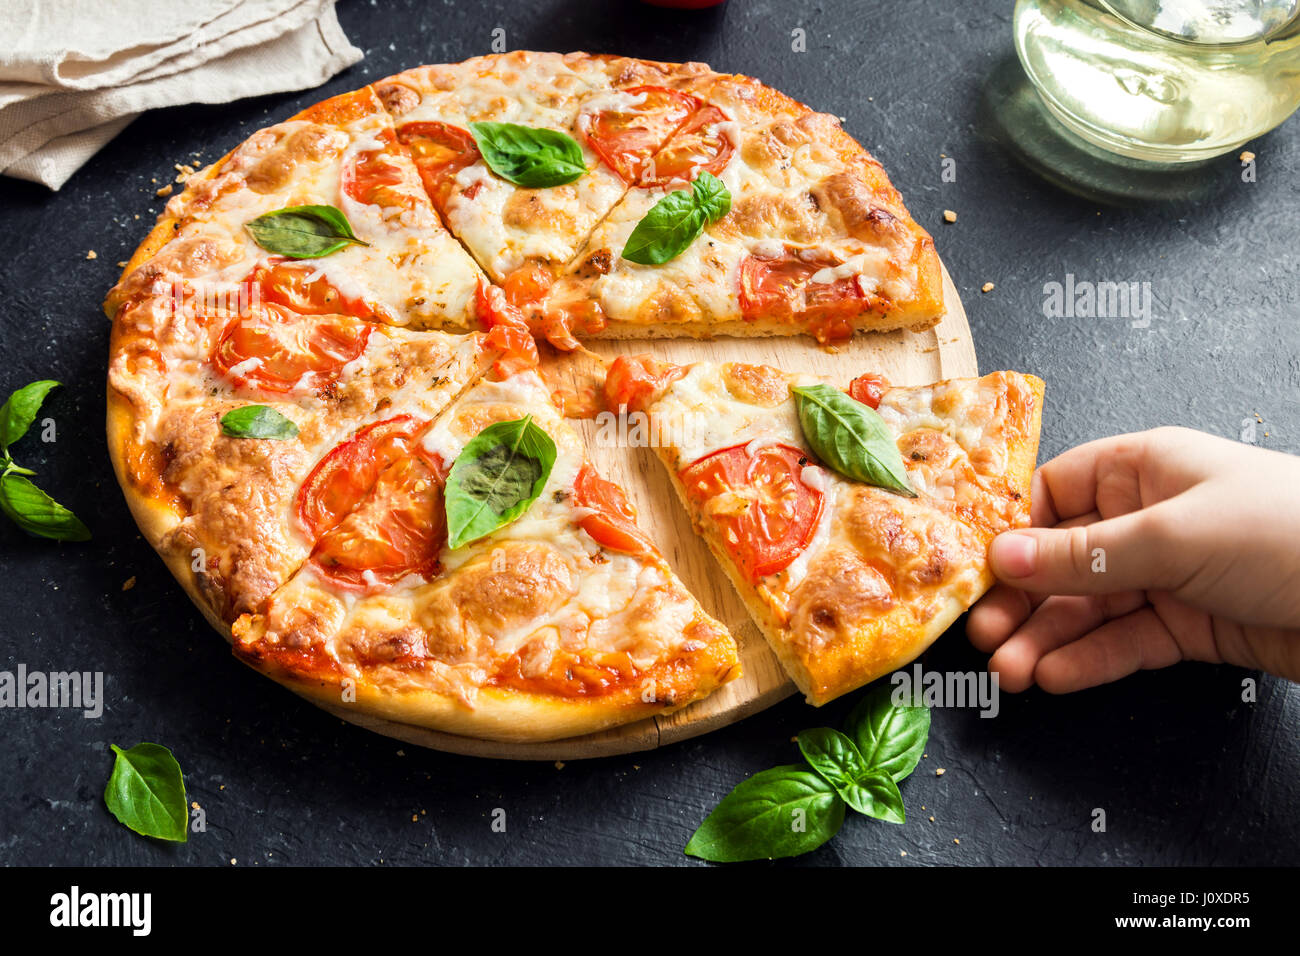 Menschen Hand die Scheibe der Pizza Margherita. Pizza Margarita und Kinderhand hautnah. Stockfoto